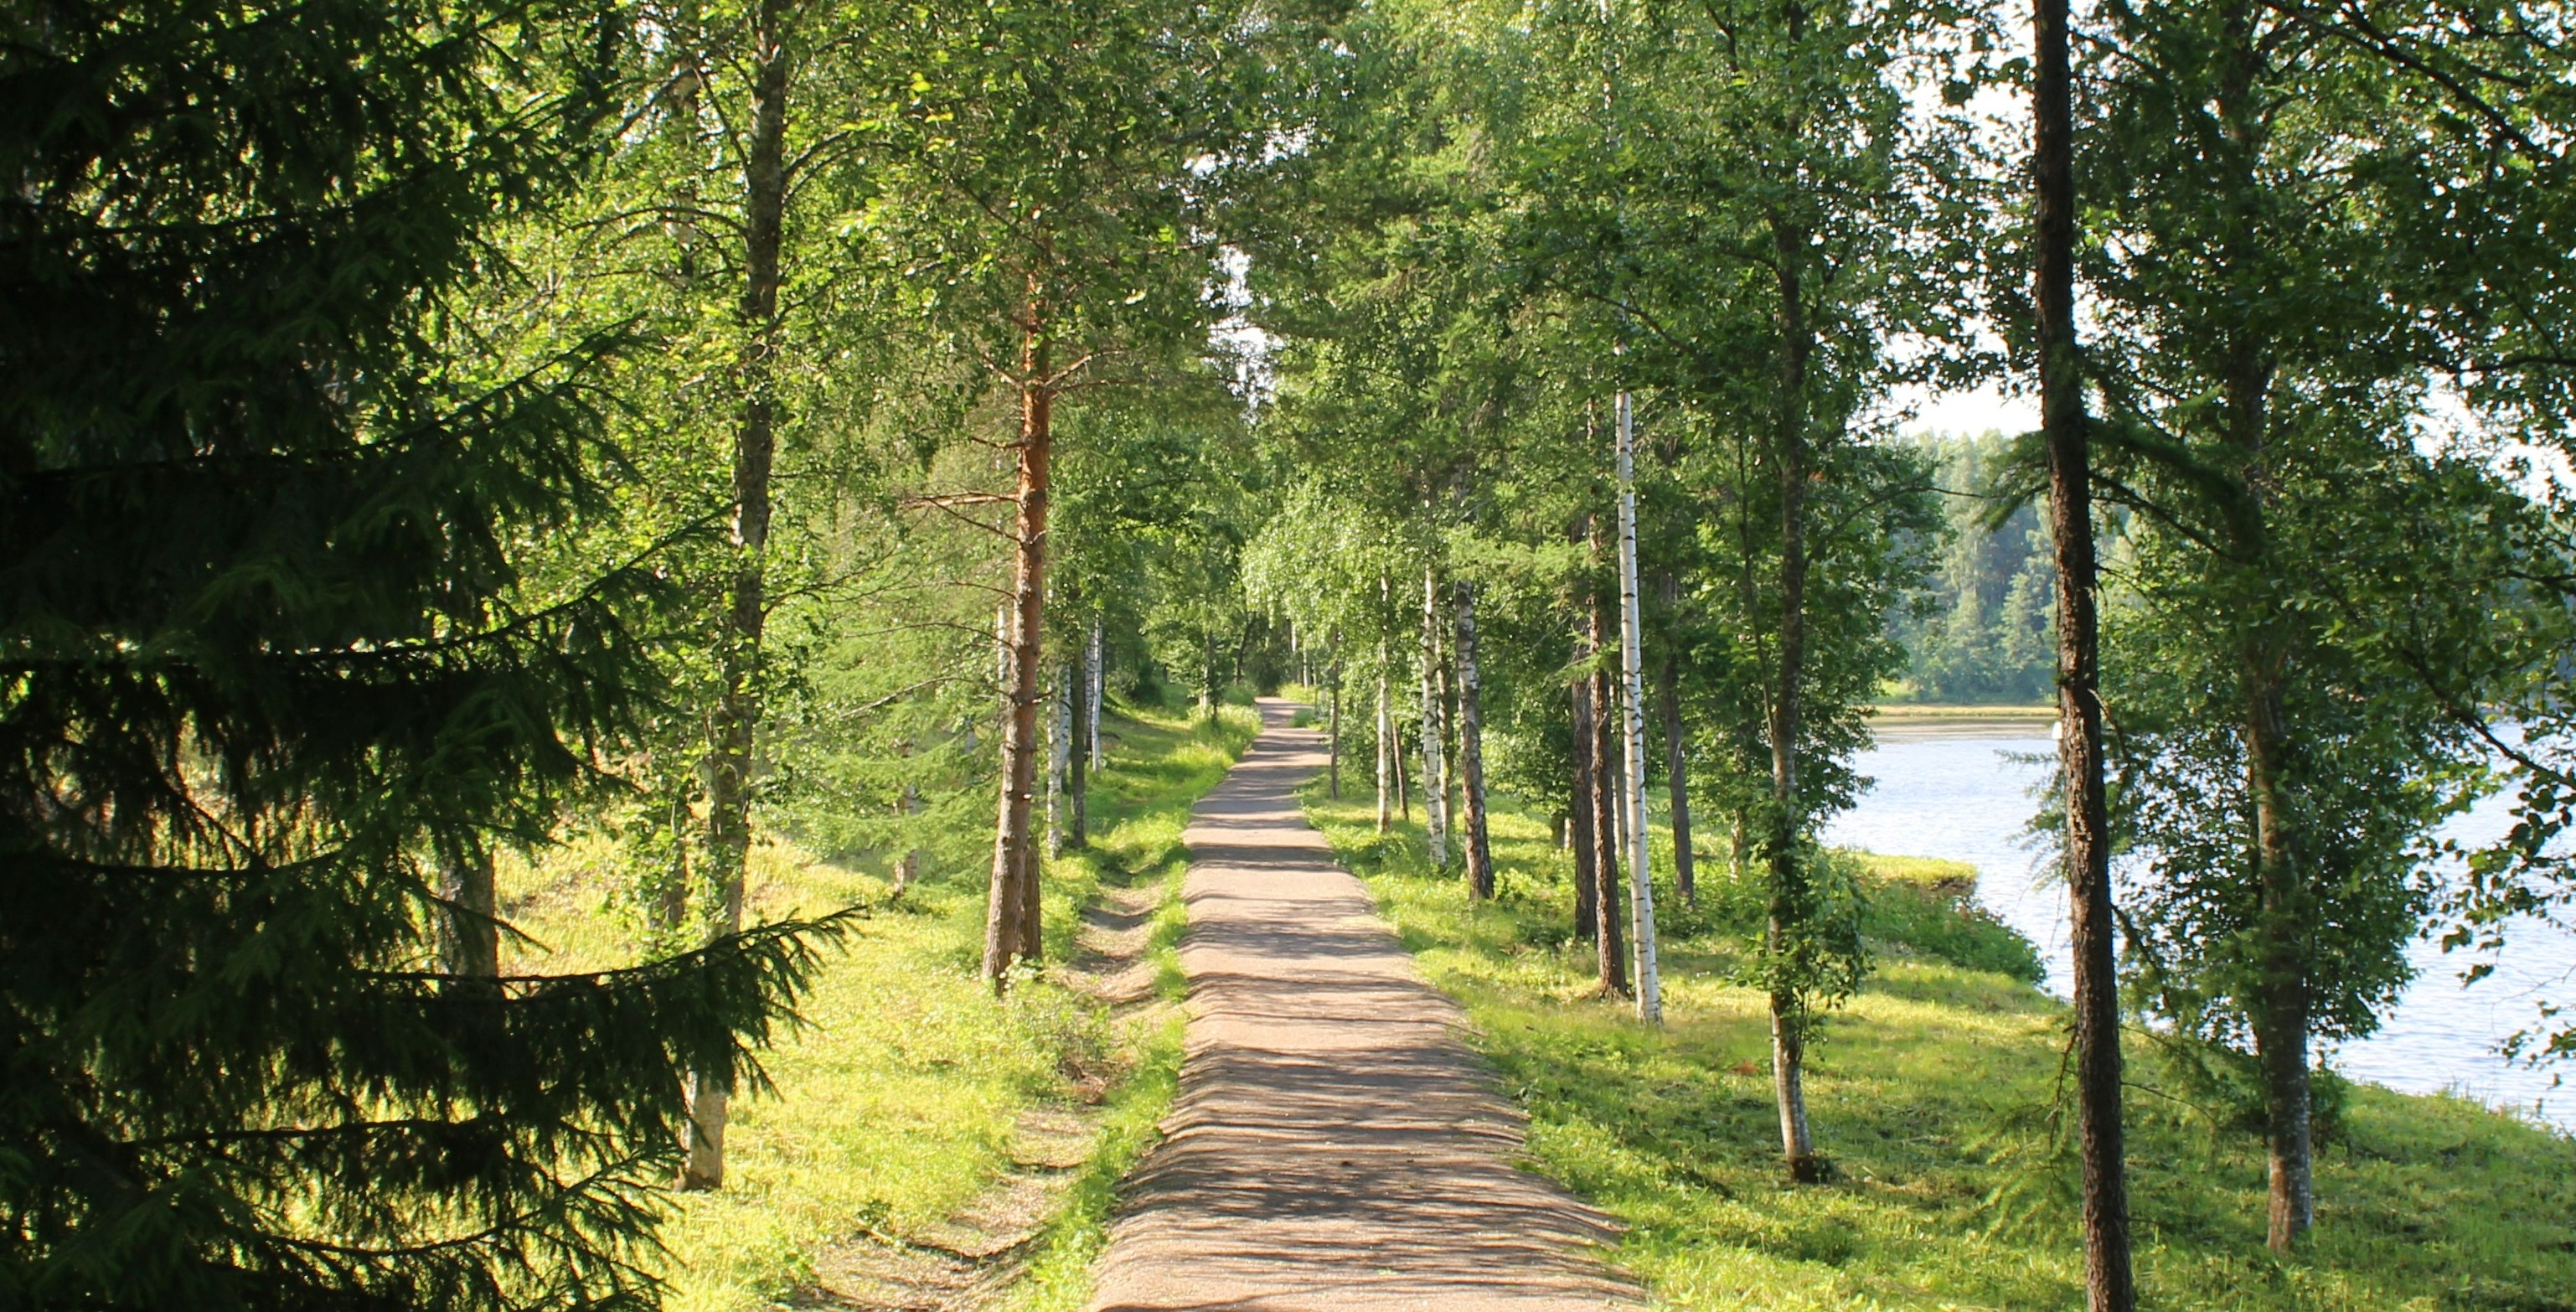 Vehreän luonnon keskellä kulkeva polku. Polun reunalla on vihreitä puita. Oikealla näkyy sinistä järveä.